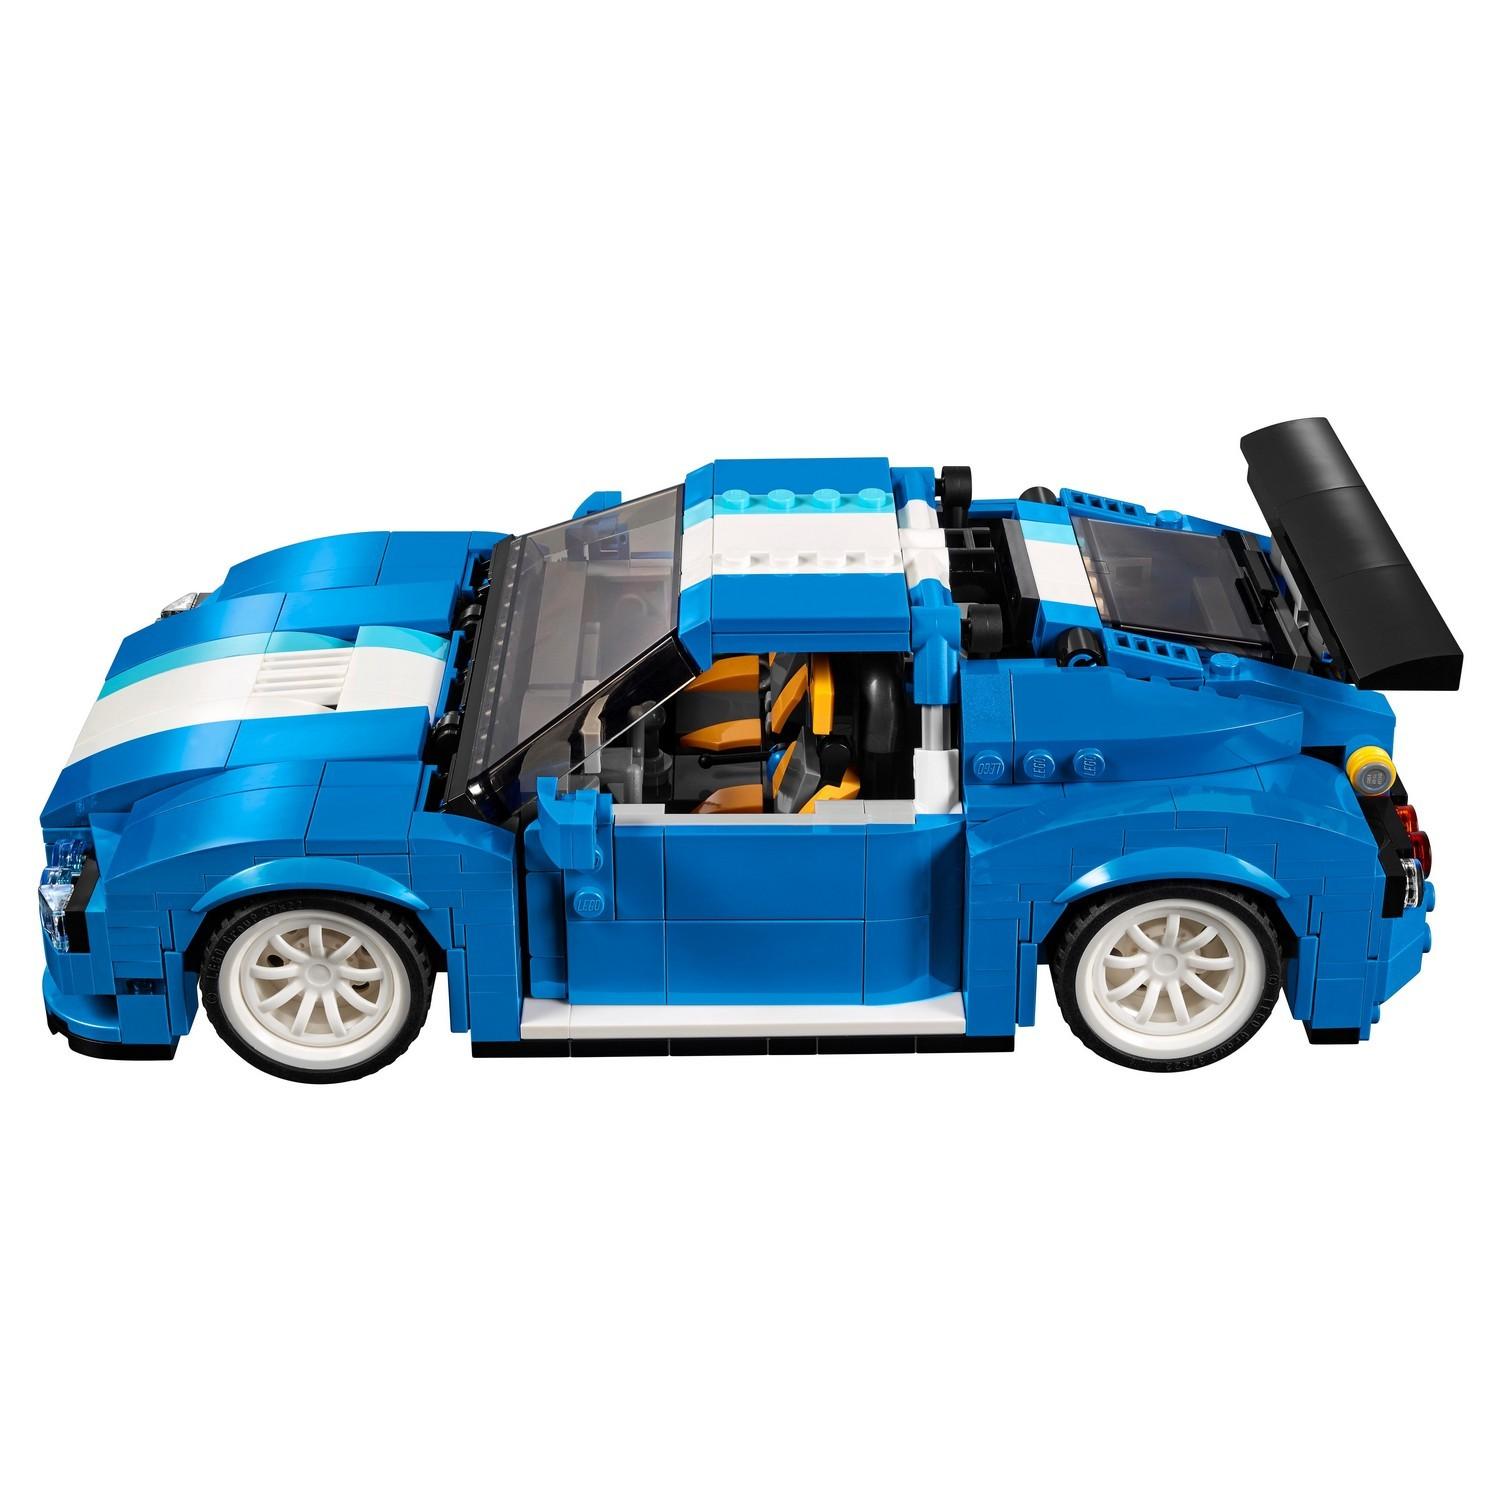 Lego Creator 31070 Гоночный автомобиль